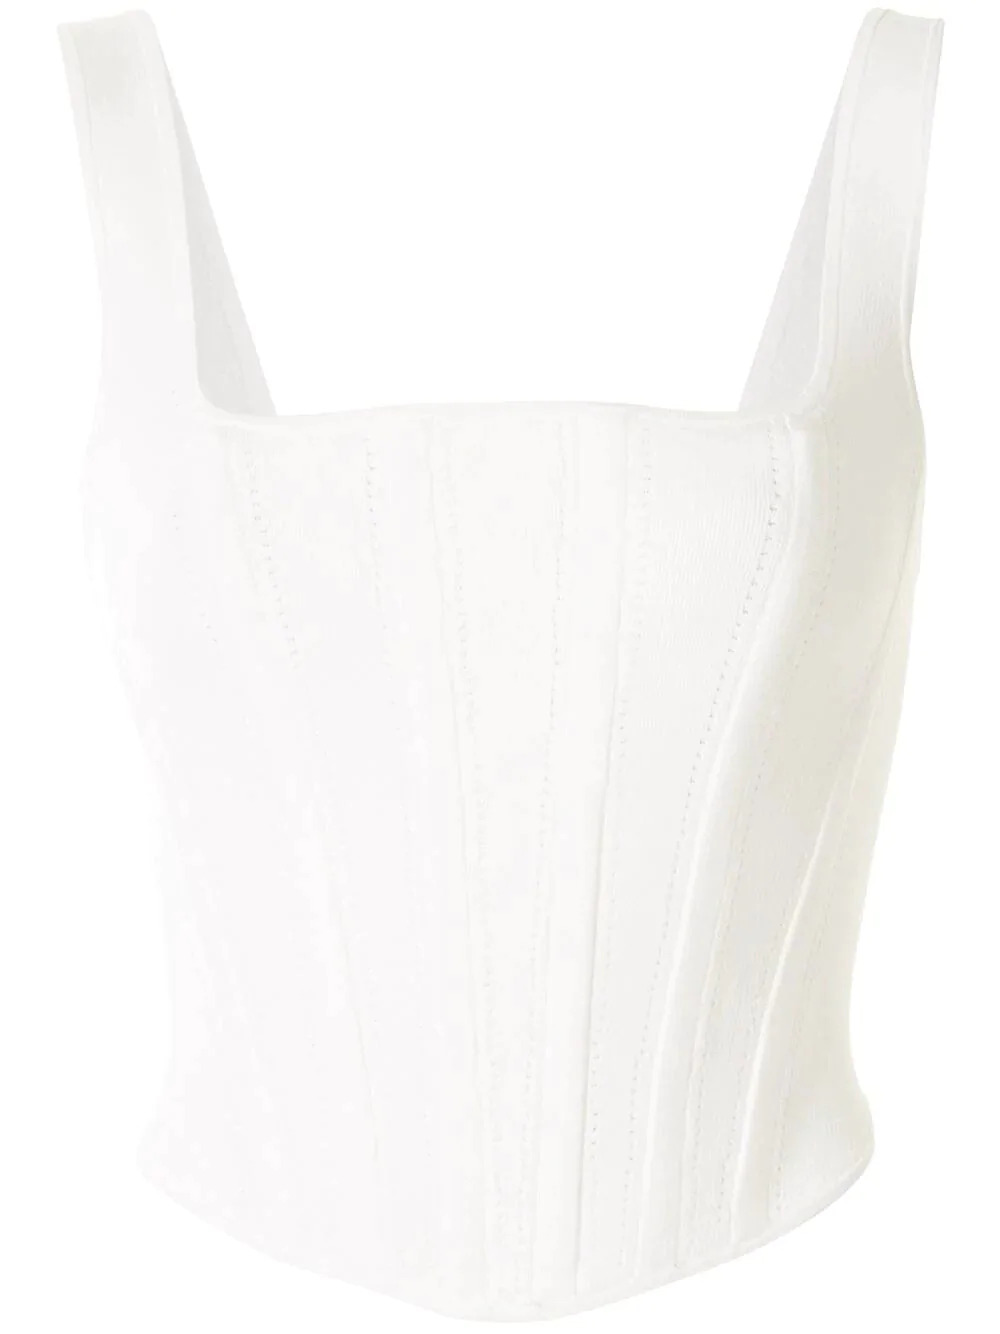 Bridgerton-inspired corset top